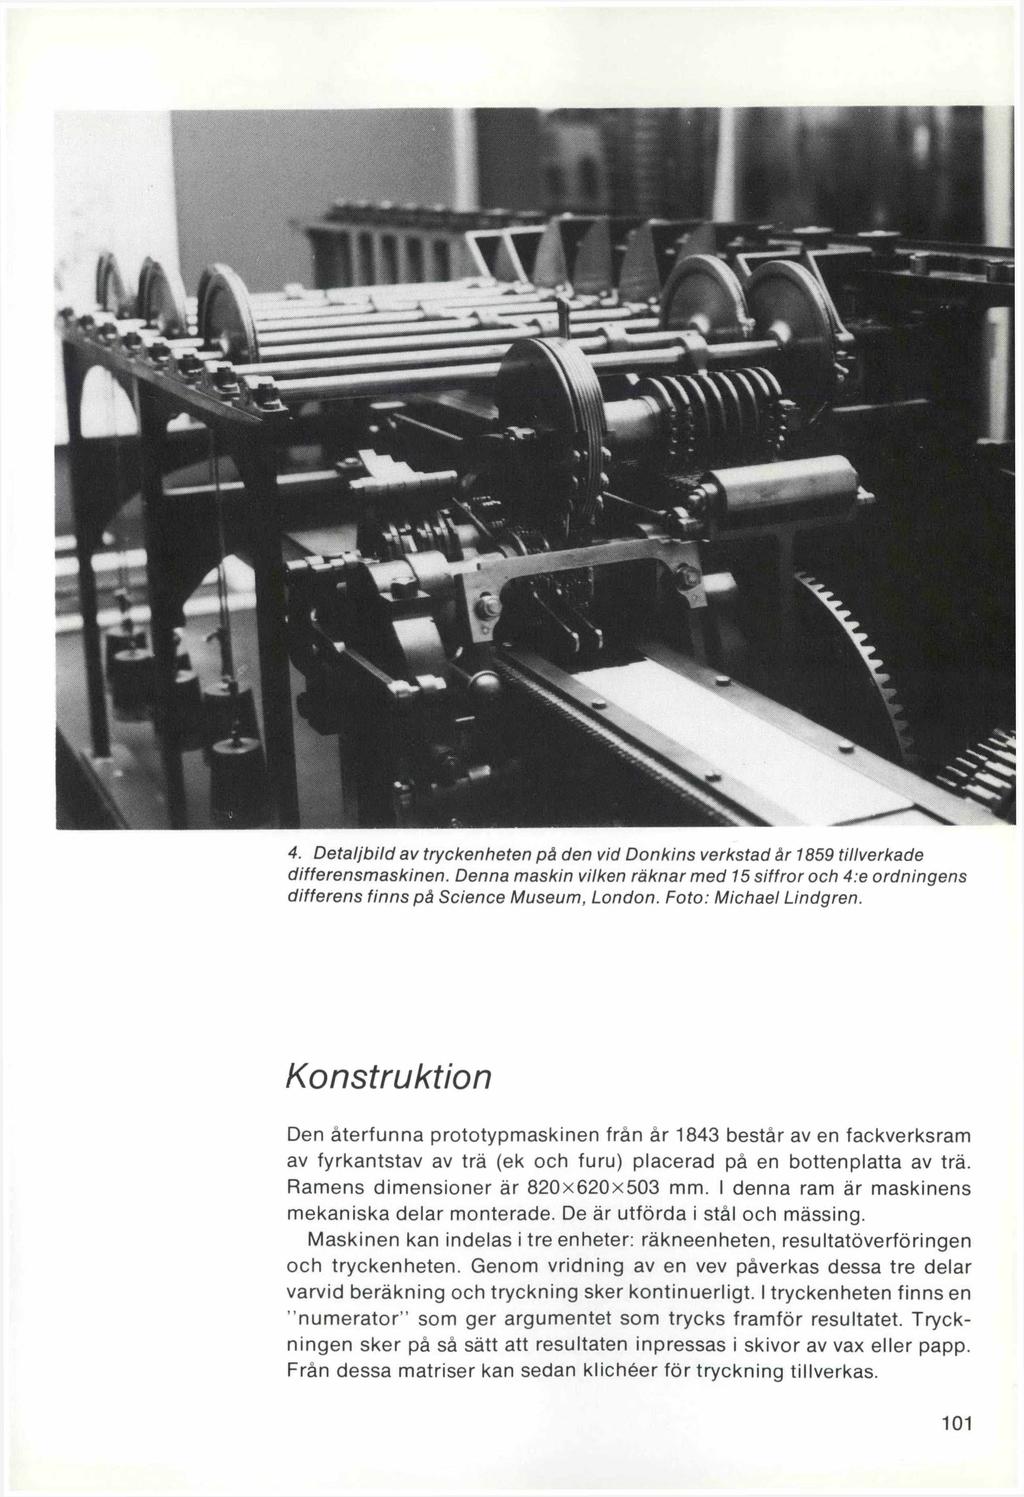 4. Detaljbild av tryckenheten på den vid Donkins verkstad år 1859 tillverkade differensmaskinen. Denna maskin vilken räknar med 15 siffror och 4:e ordningens differens finns på Science Museum, London.